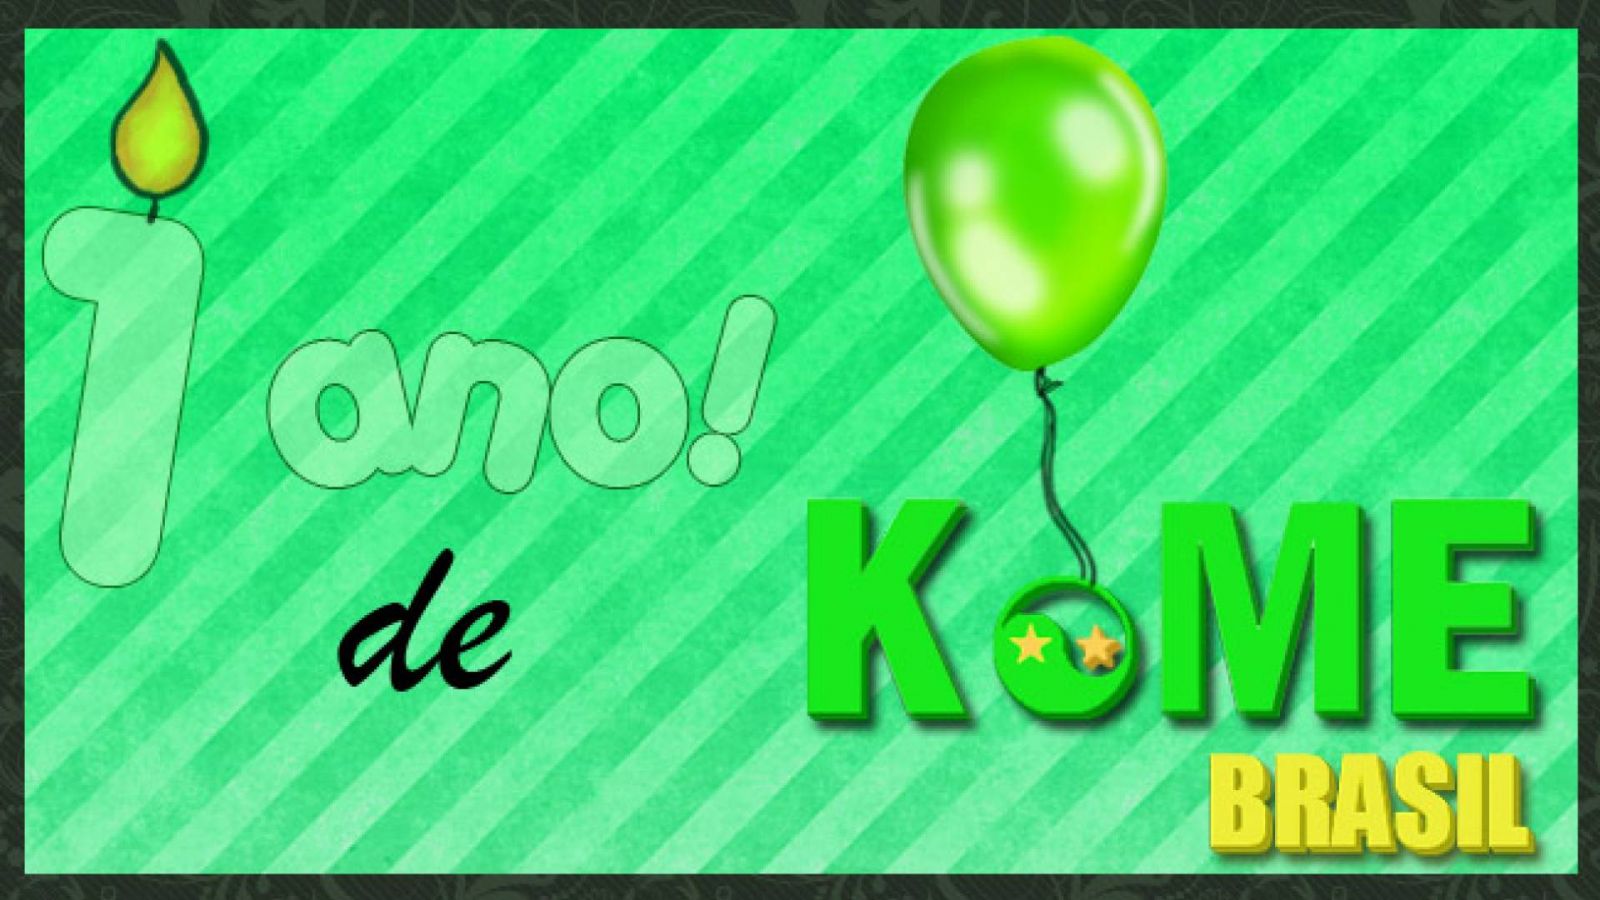 Resultado do Concurso: 1 ano de KoME Brasil! © KoME